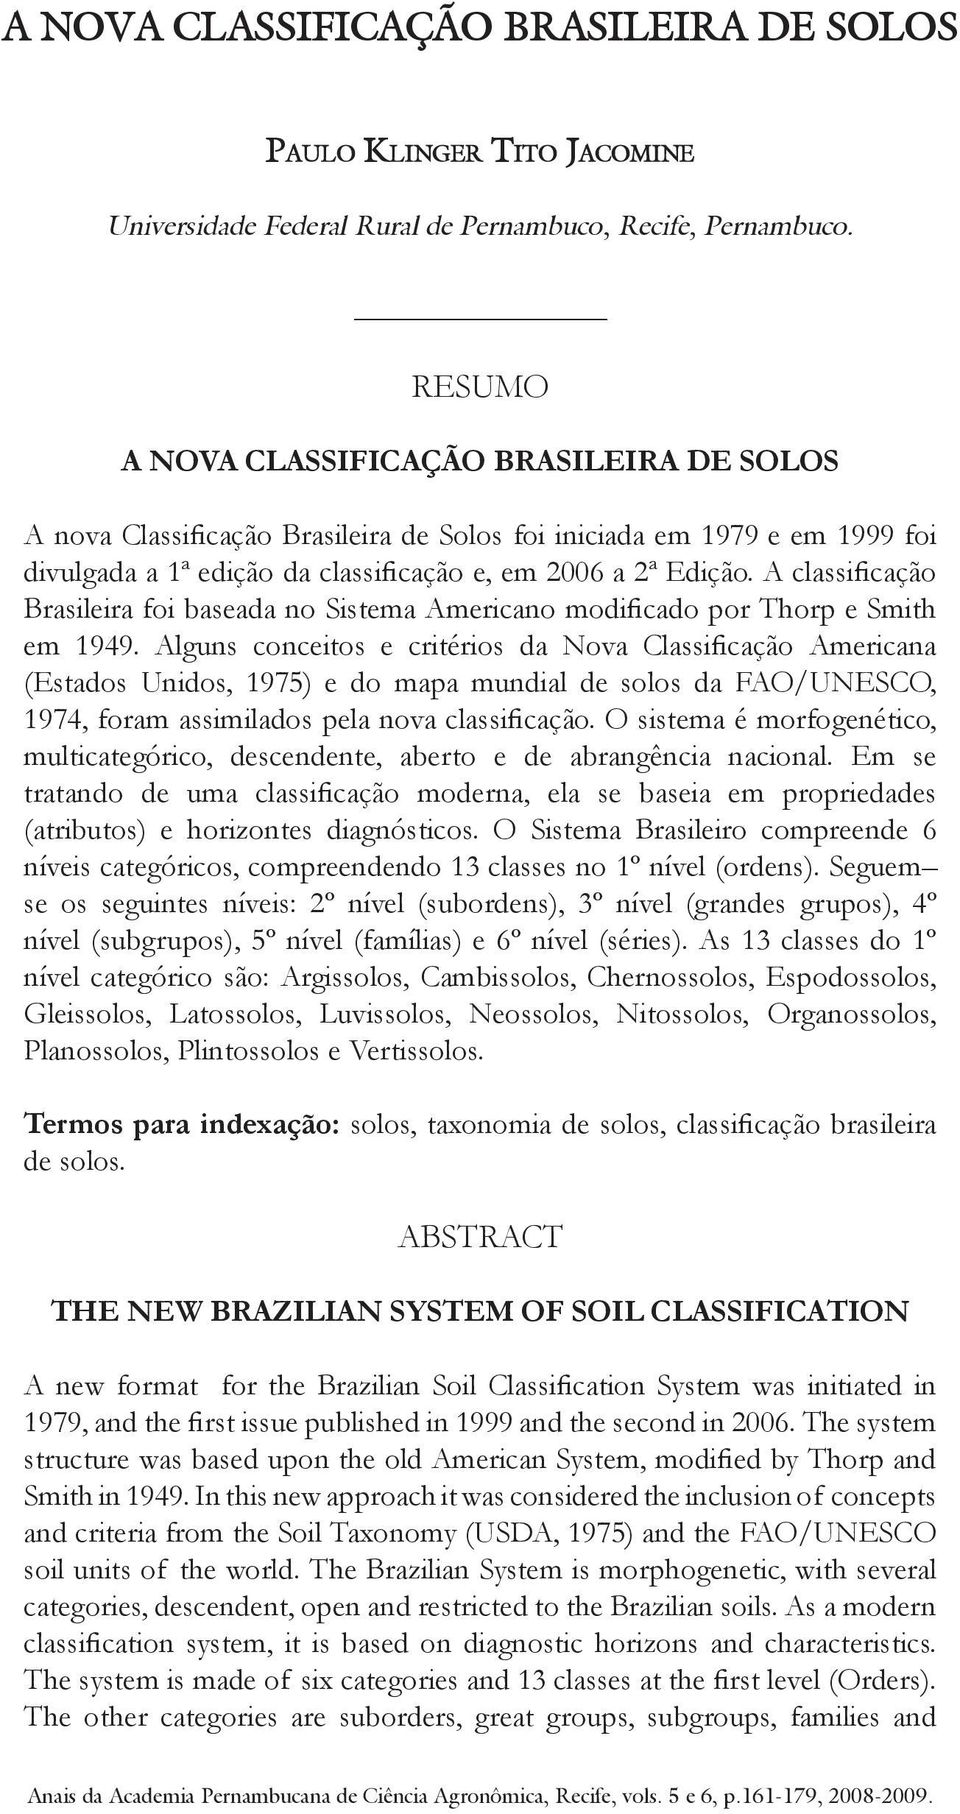 A classificação Brasileira foi baseada no Sistema Americano modificado por Thorp e Smith em 1949.